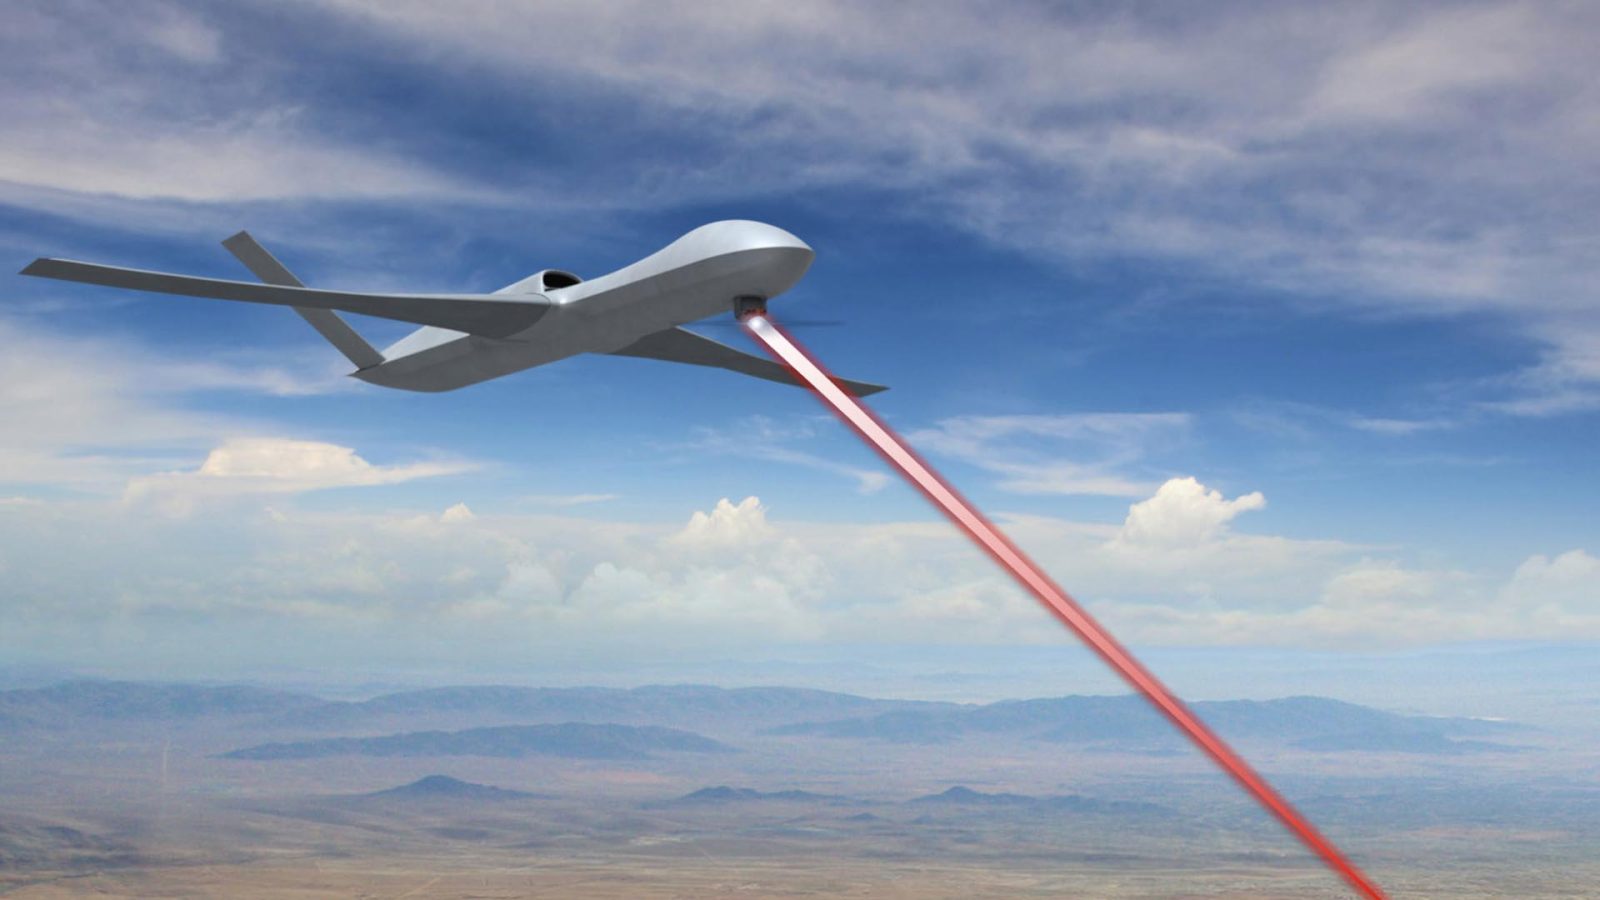 DARPA drones recharging